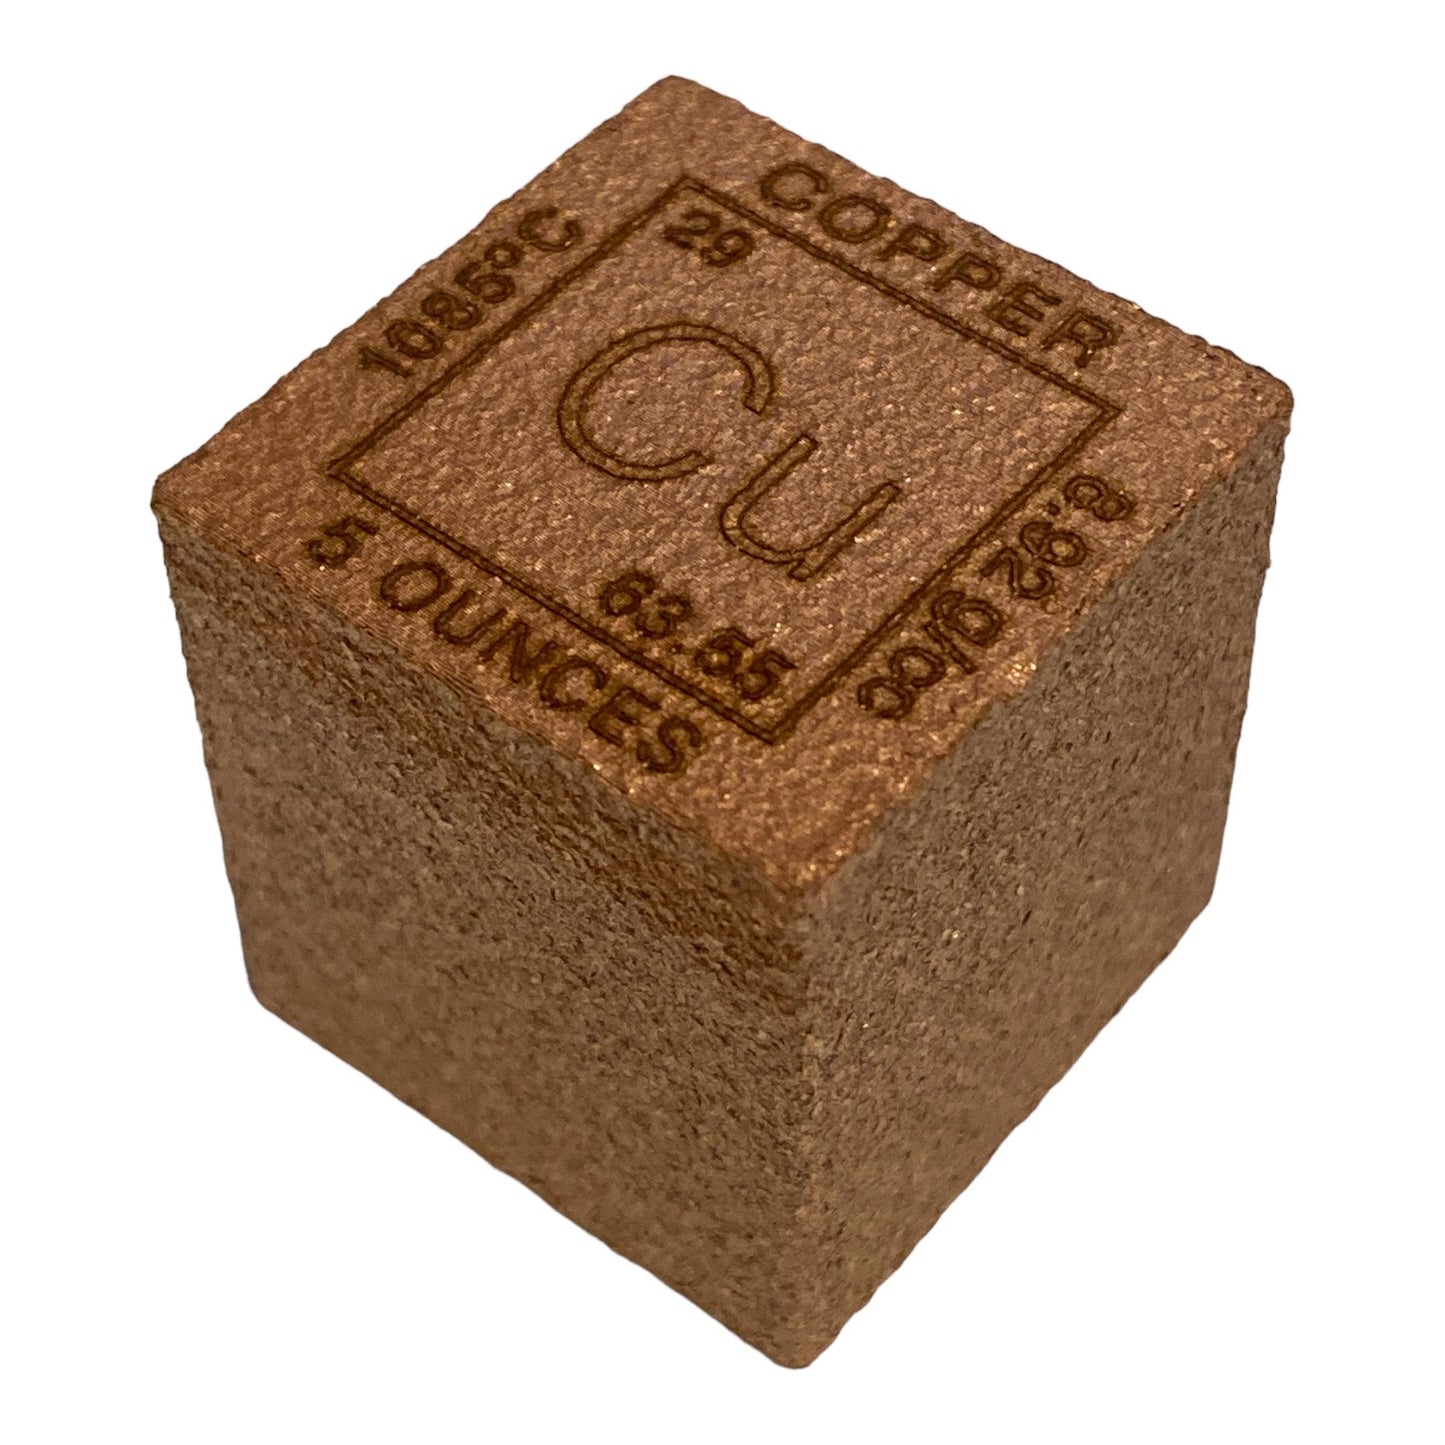 5 oz copper cube .999 Fine Copper Bullion